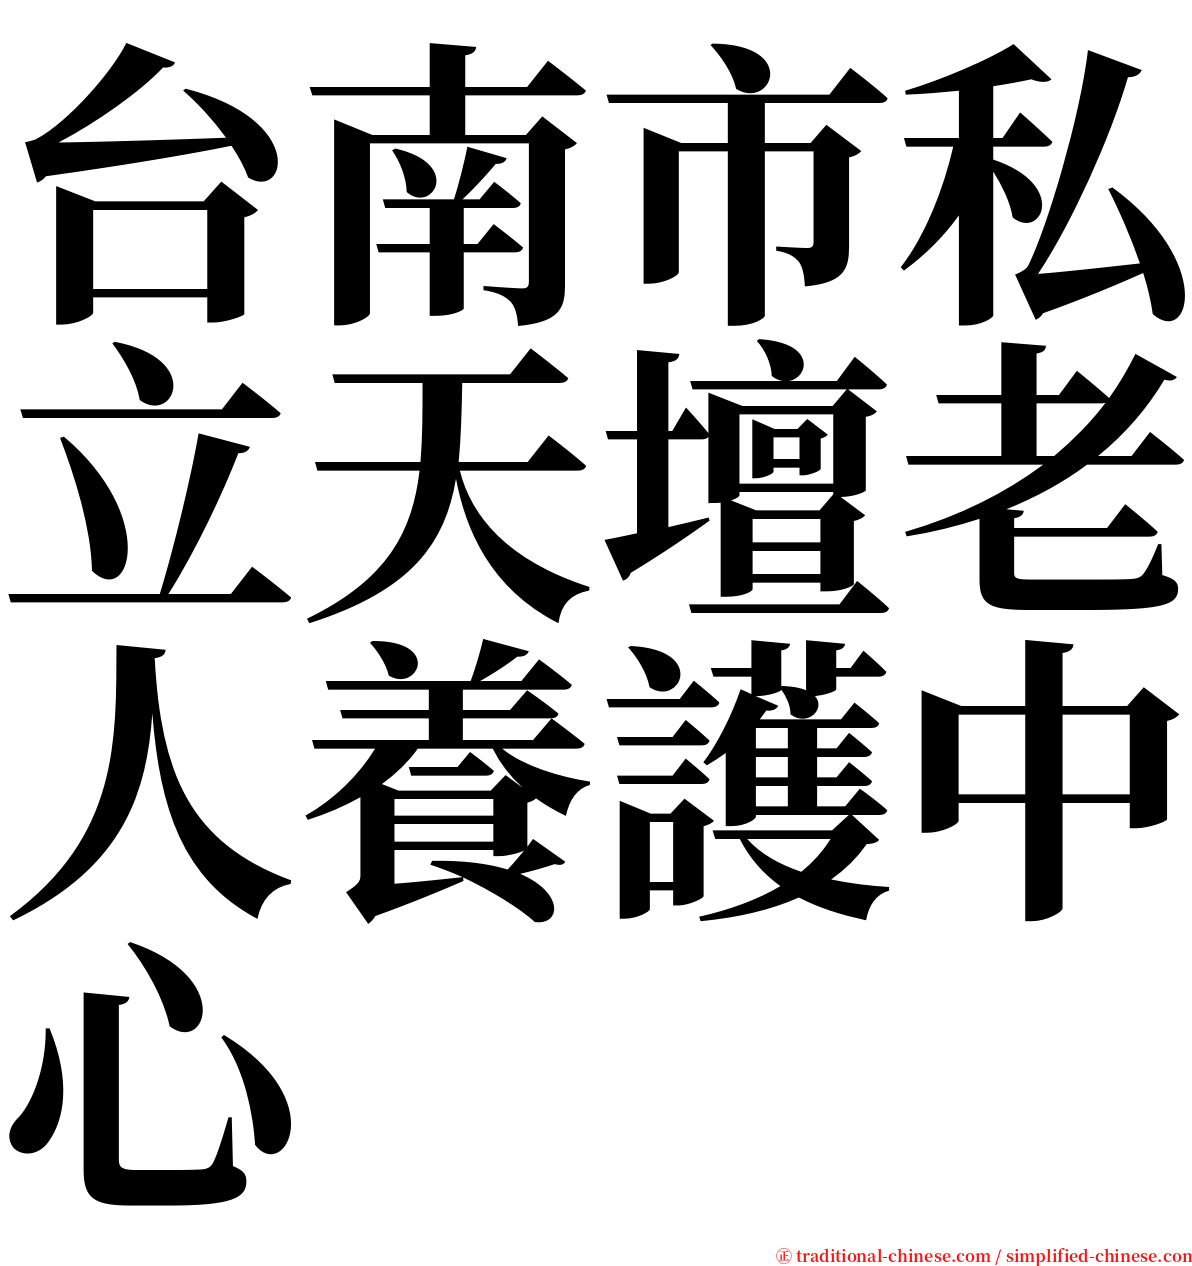 台南市私立天壇老人養護中心 serif font